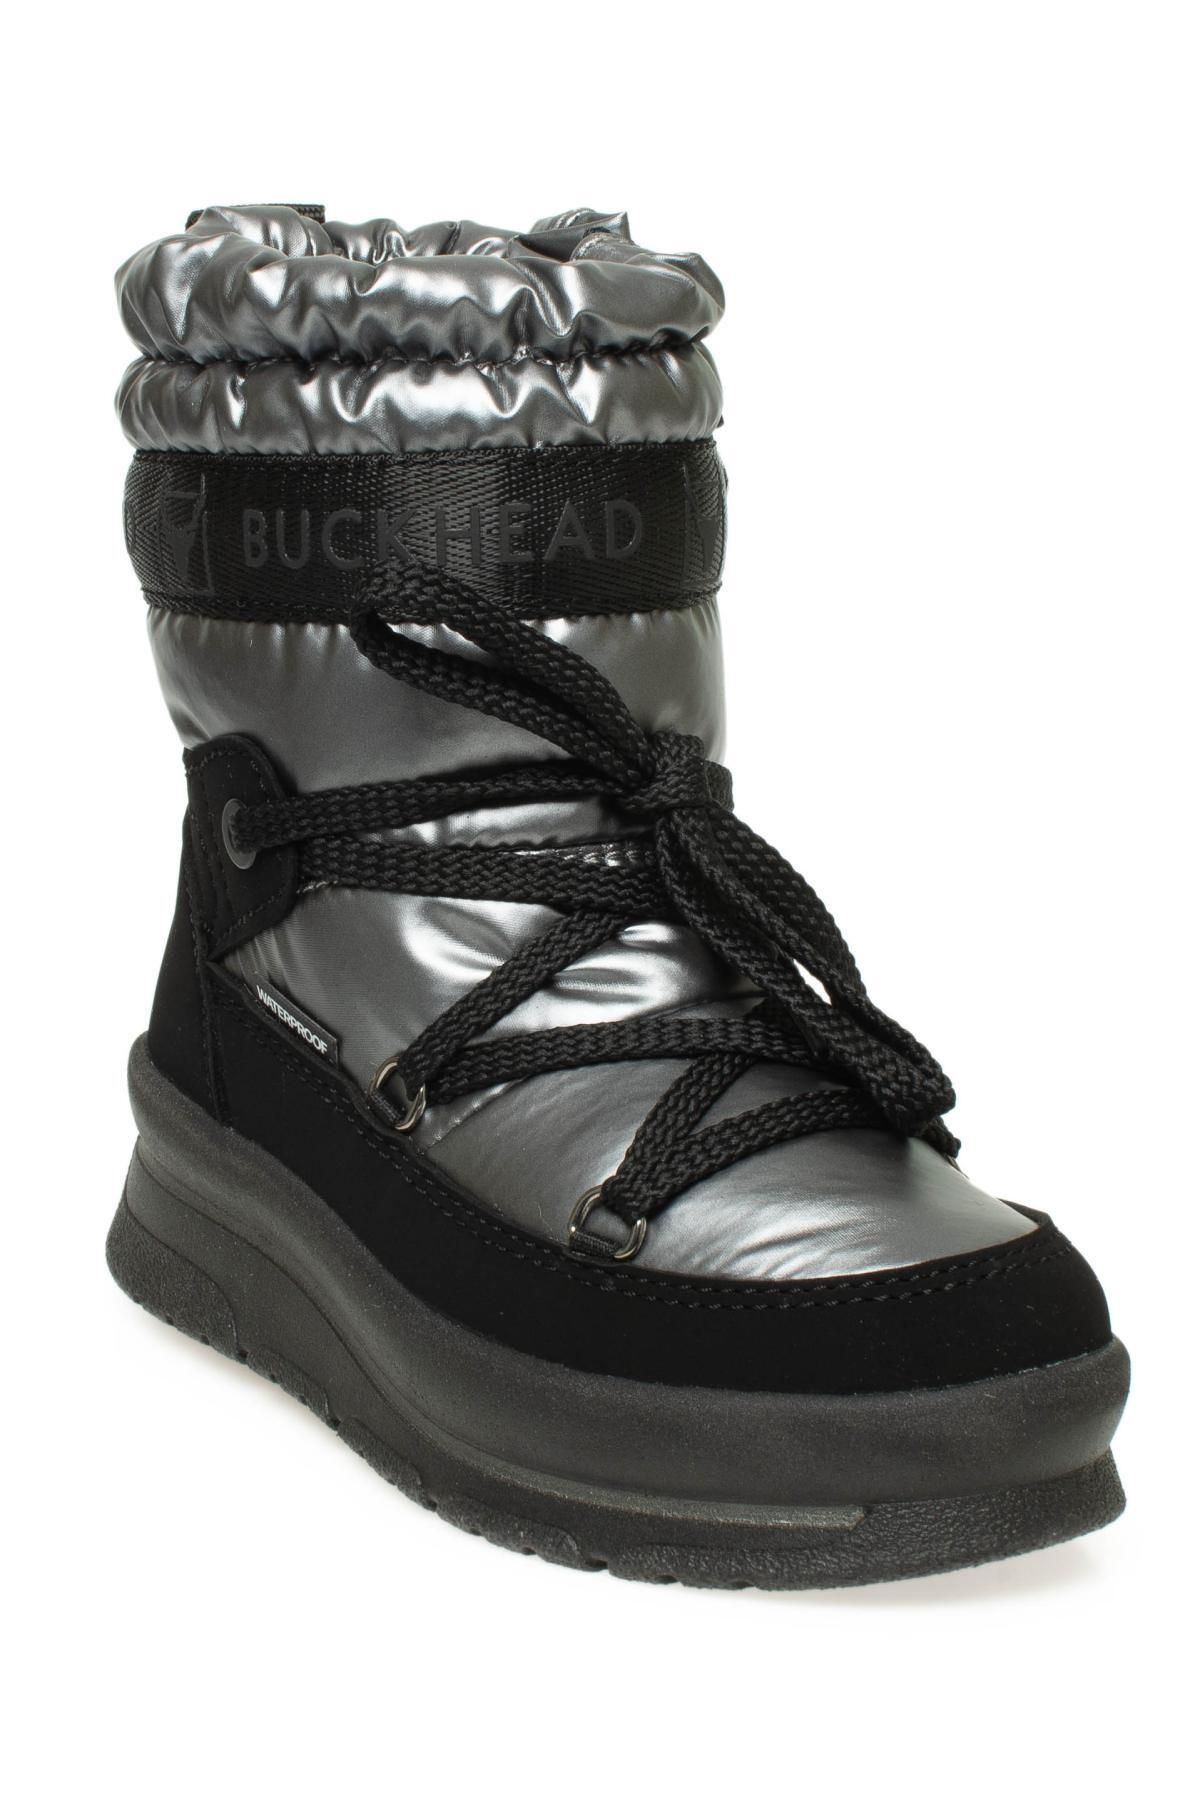 BUCKHEAD Buck1135 Coi Waterproof Kar Gri Kız Çocuk Bot